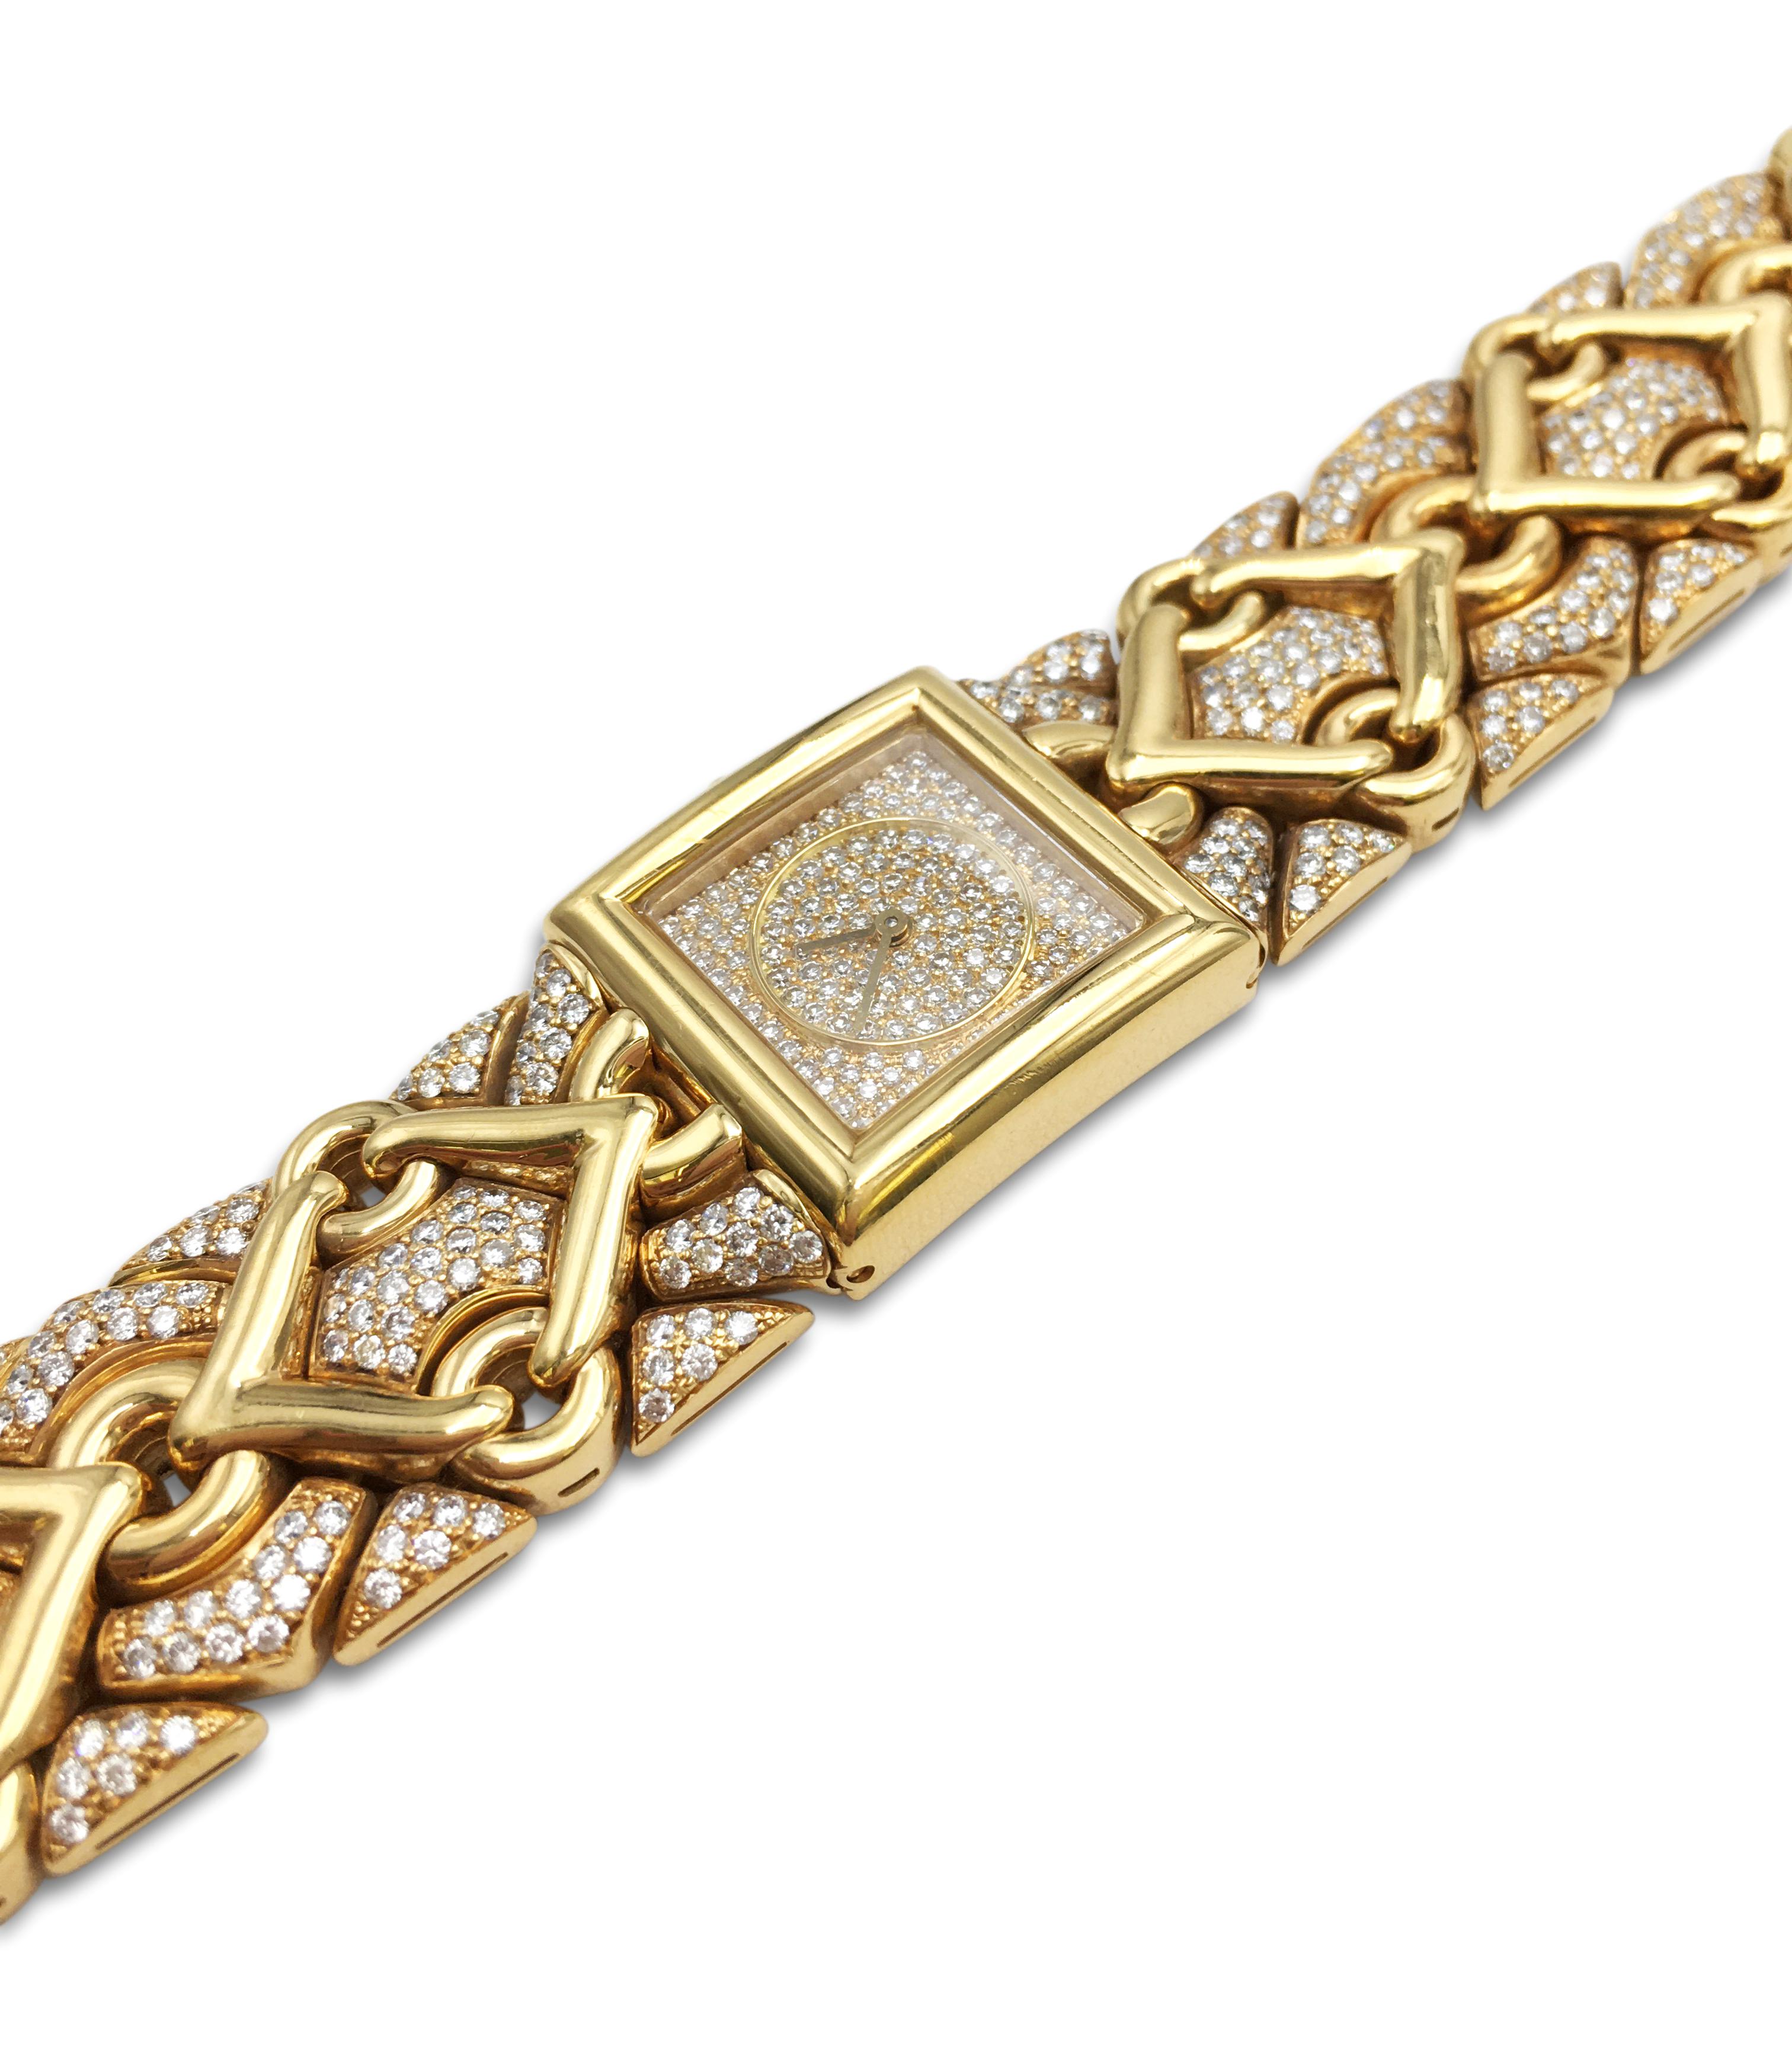 Bvlgari 'Trika' Gold and Diamond Ladies Watch 1